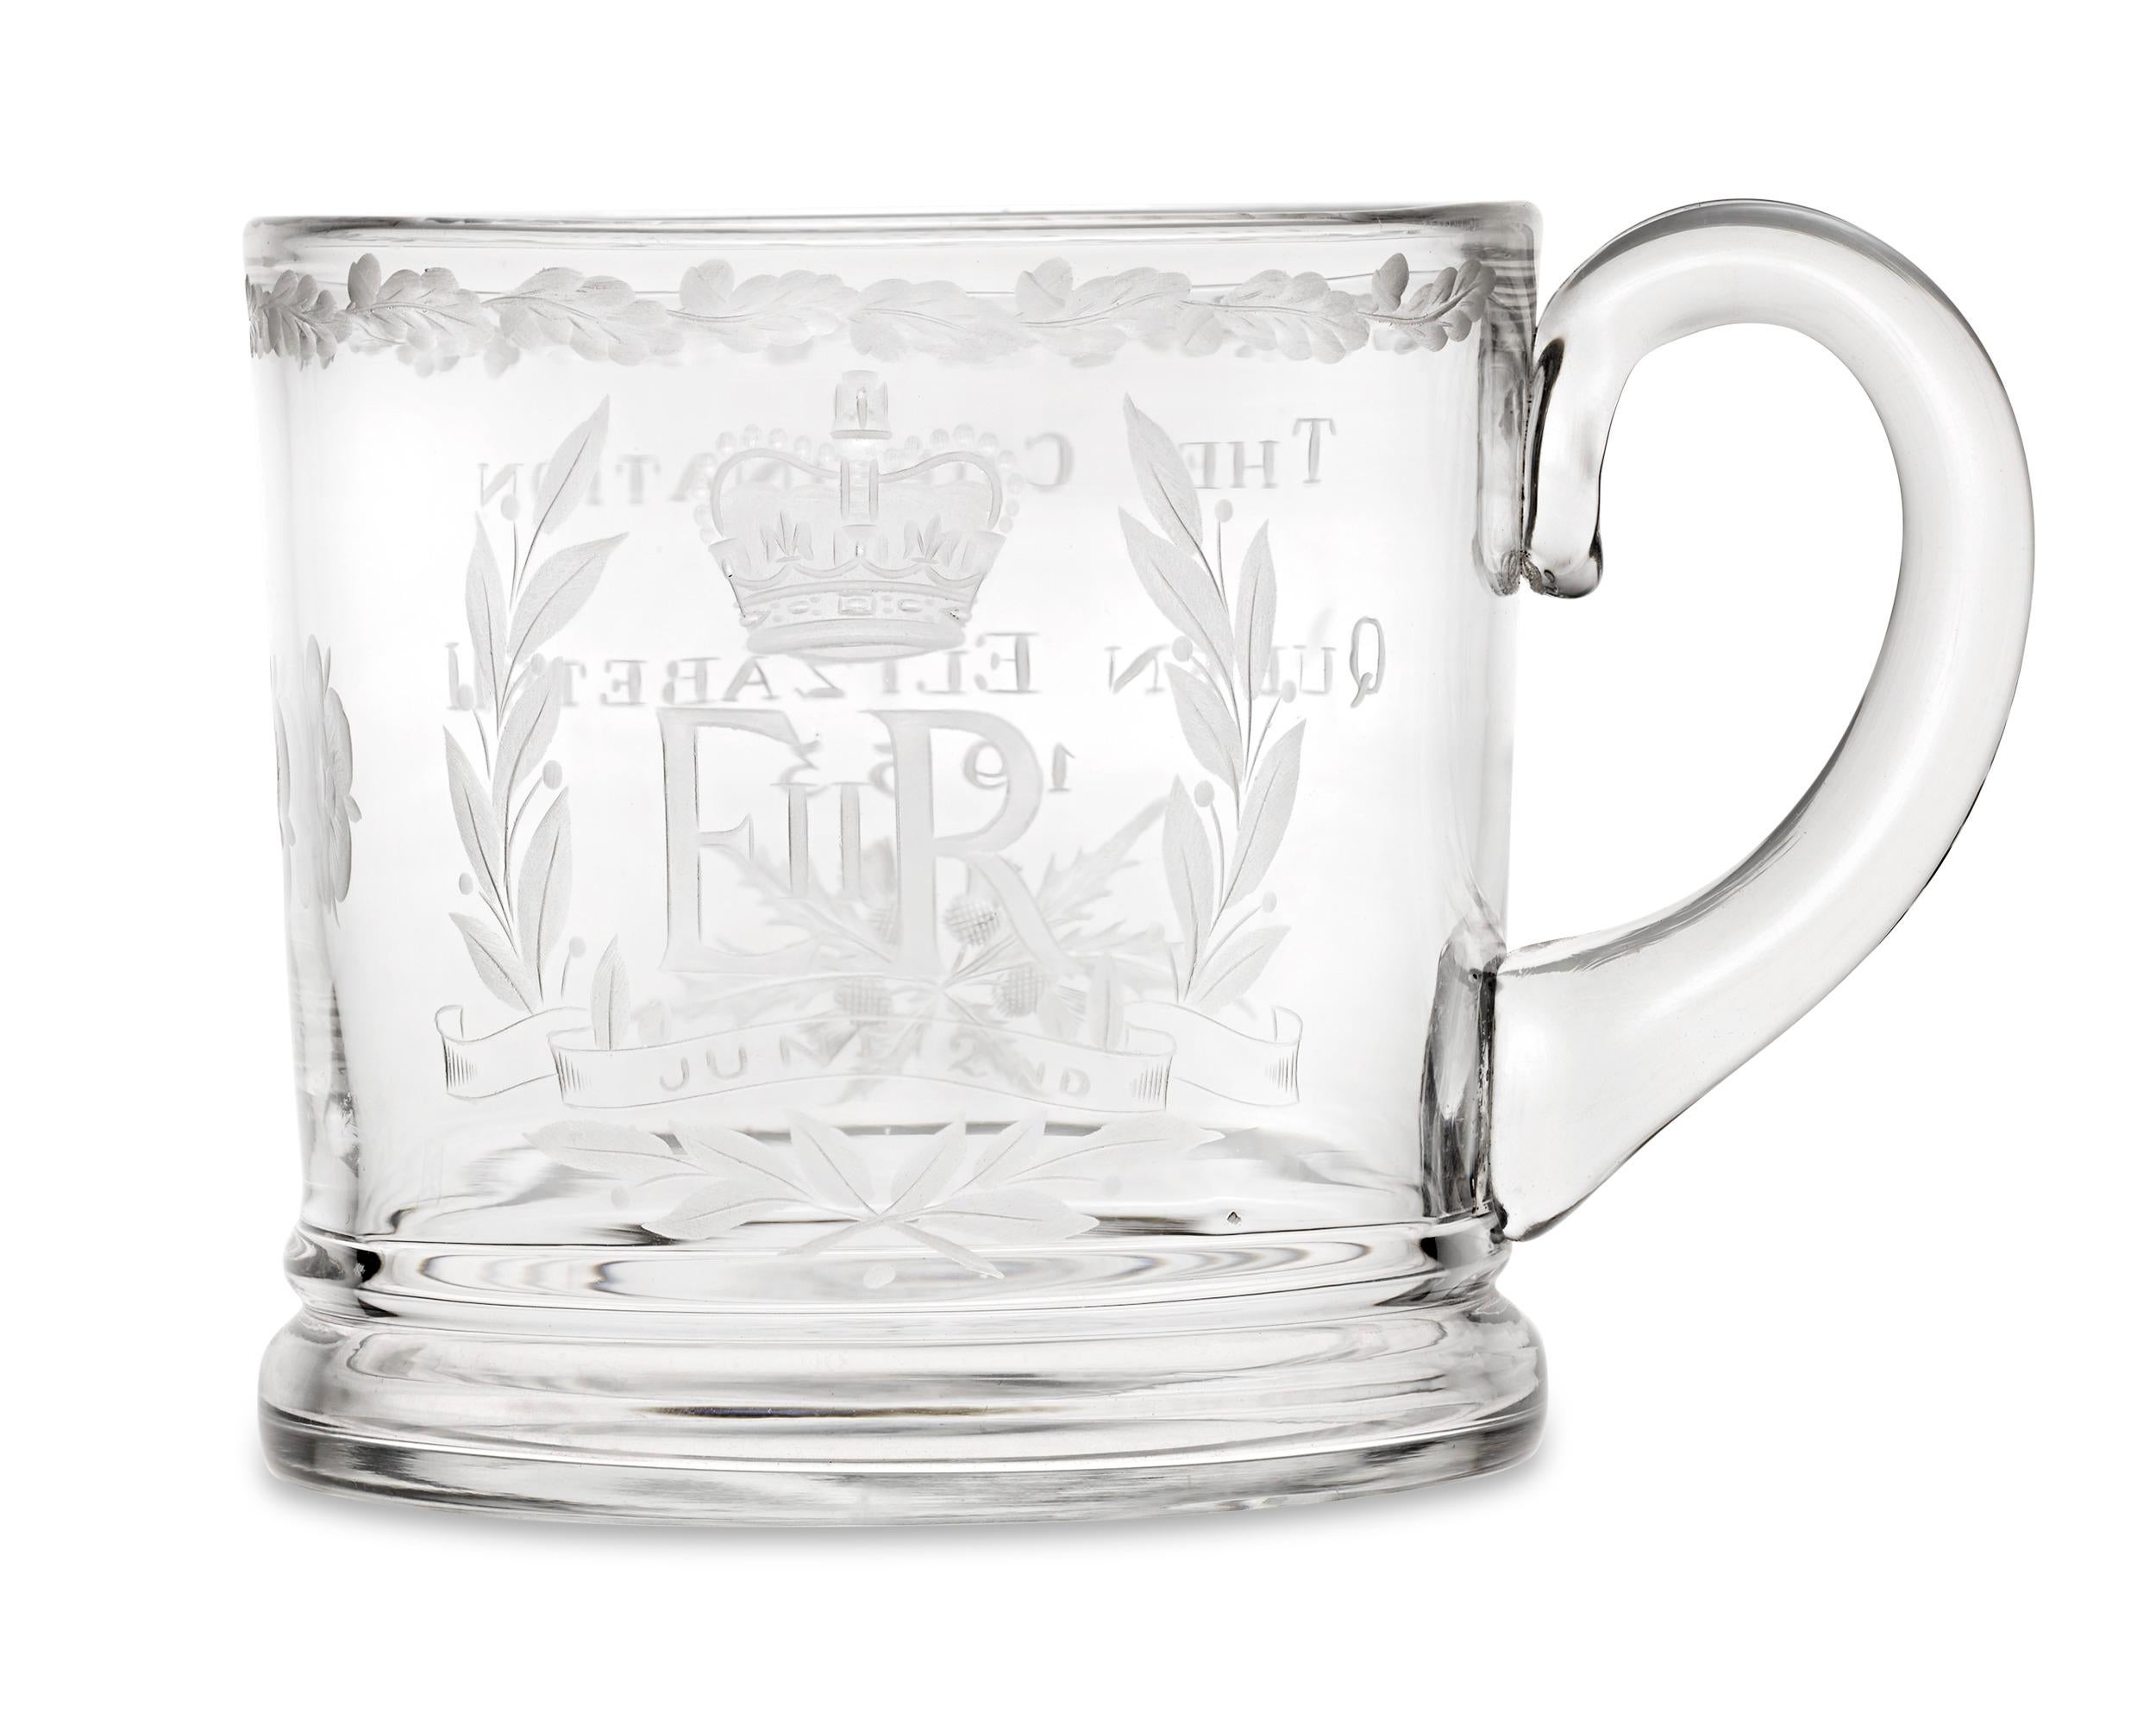 Ce verre gravé a été fabriqué pour commémorer le couronnement de la reine Élisabeth II. Seize ans après le couronnement de son père, le roi George VI, le couronnement officiel de la reine Élisabeth II a représenté un mélange fascinant de tradition